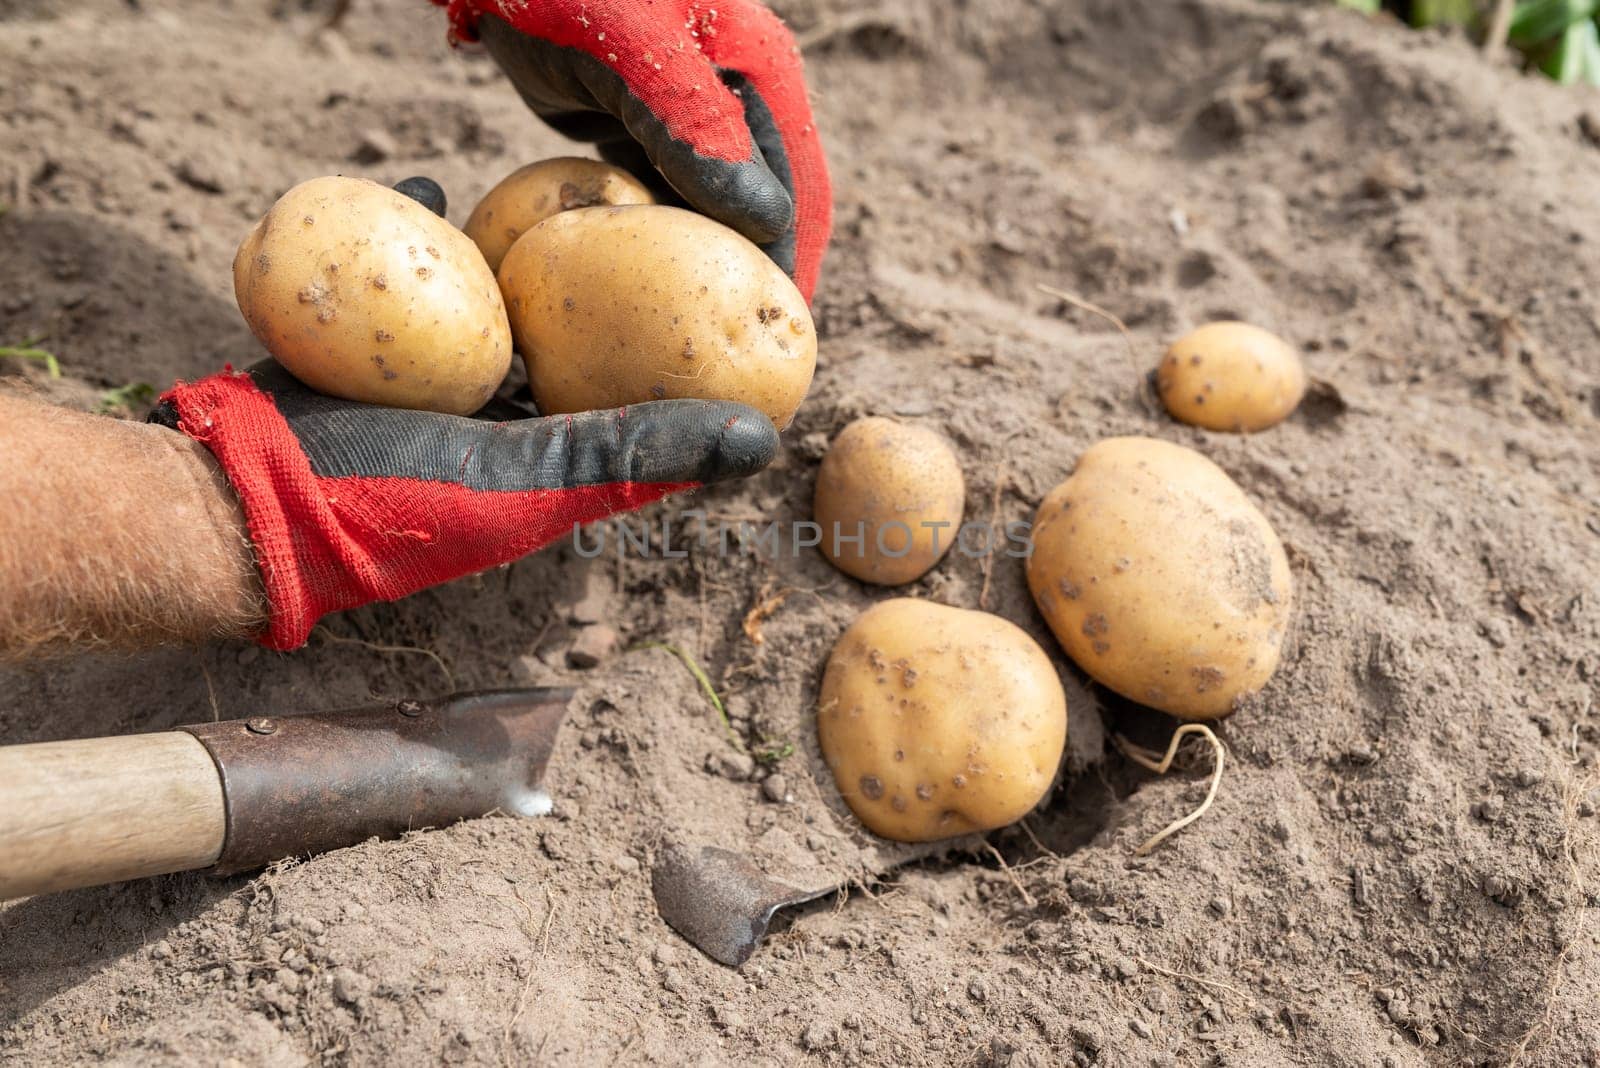 Harvest of potato in garden